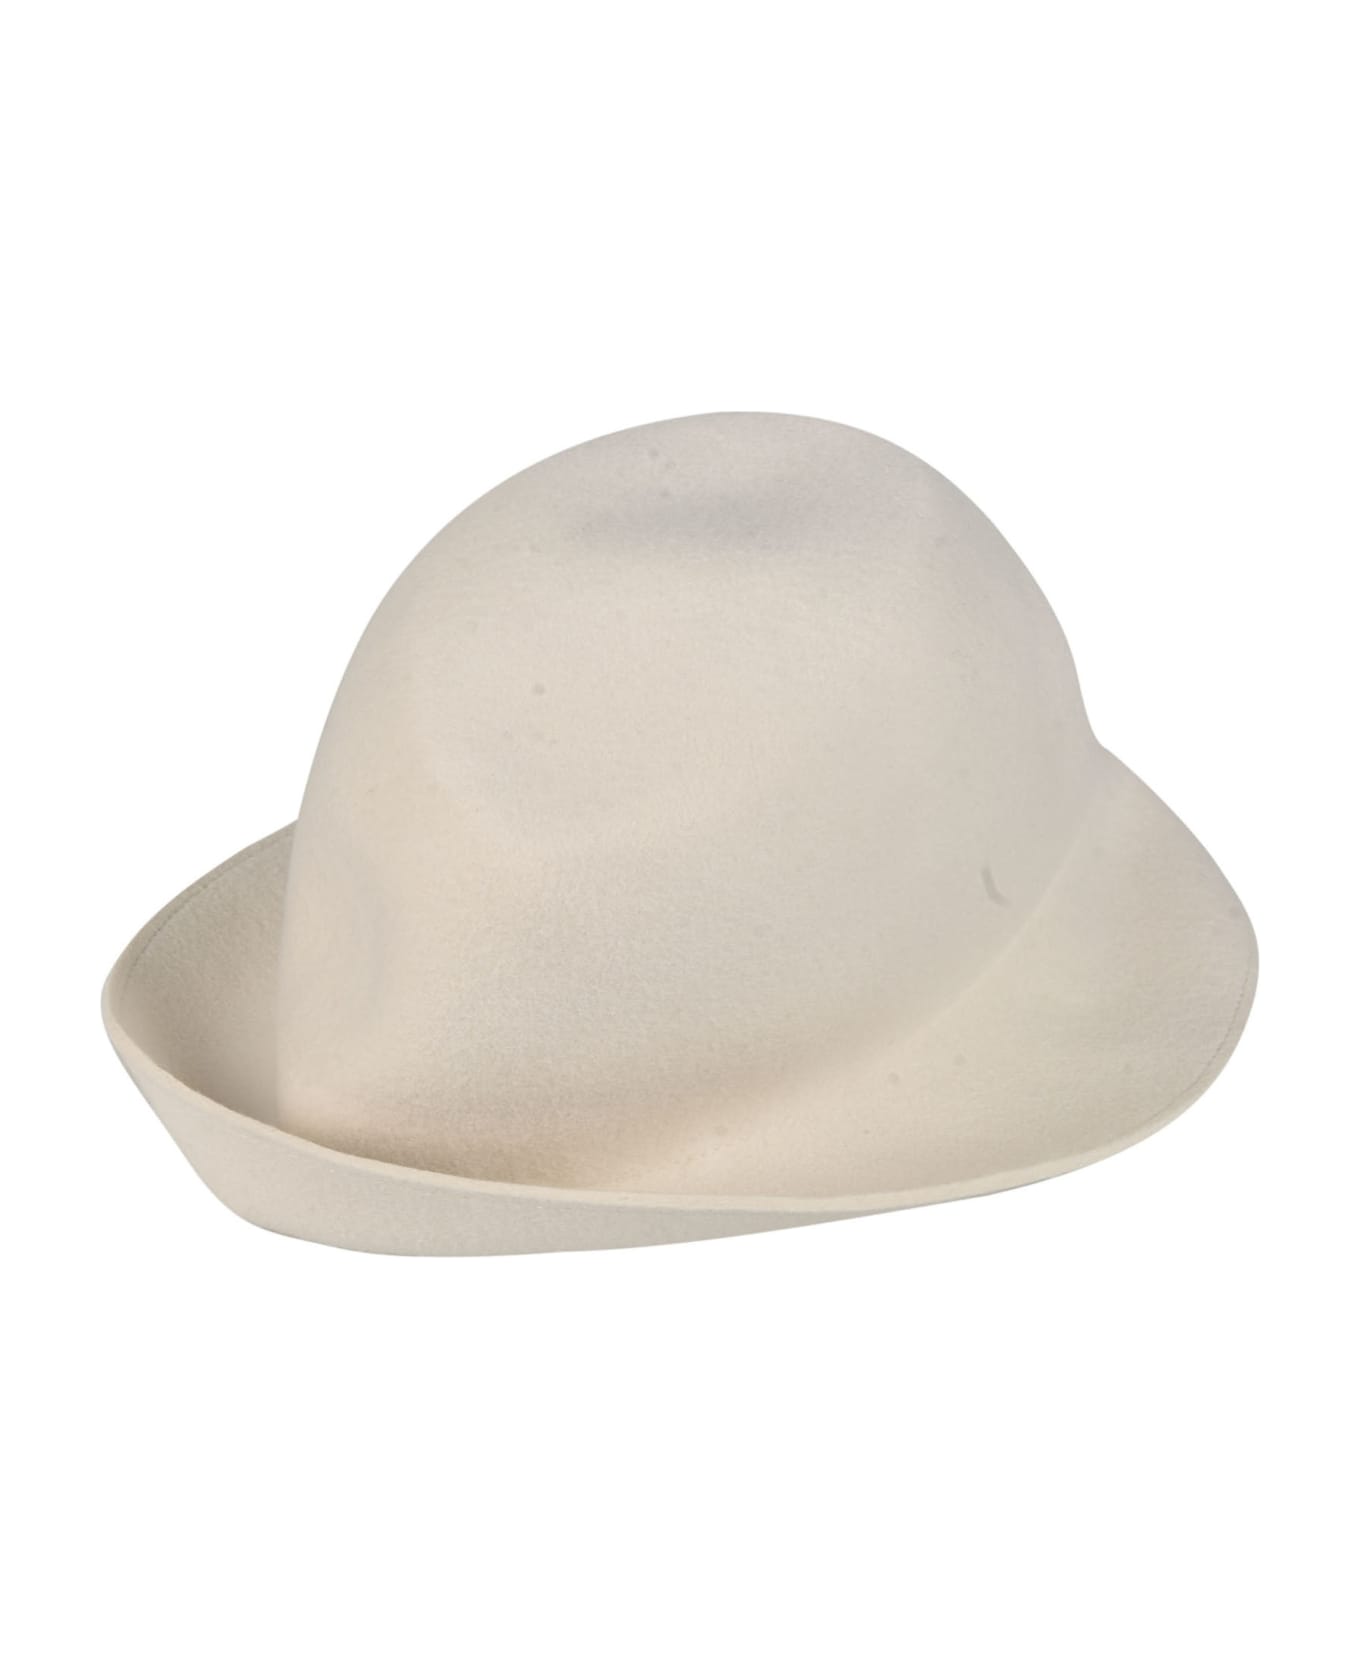 Comme des Garçons Shirt Classic Round Hat - White 帽子